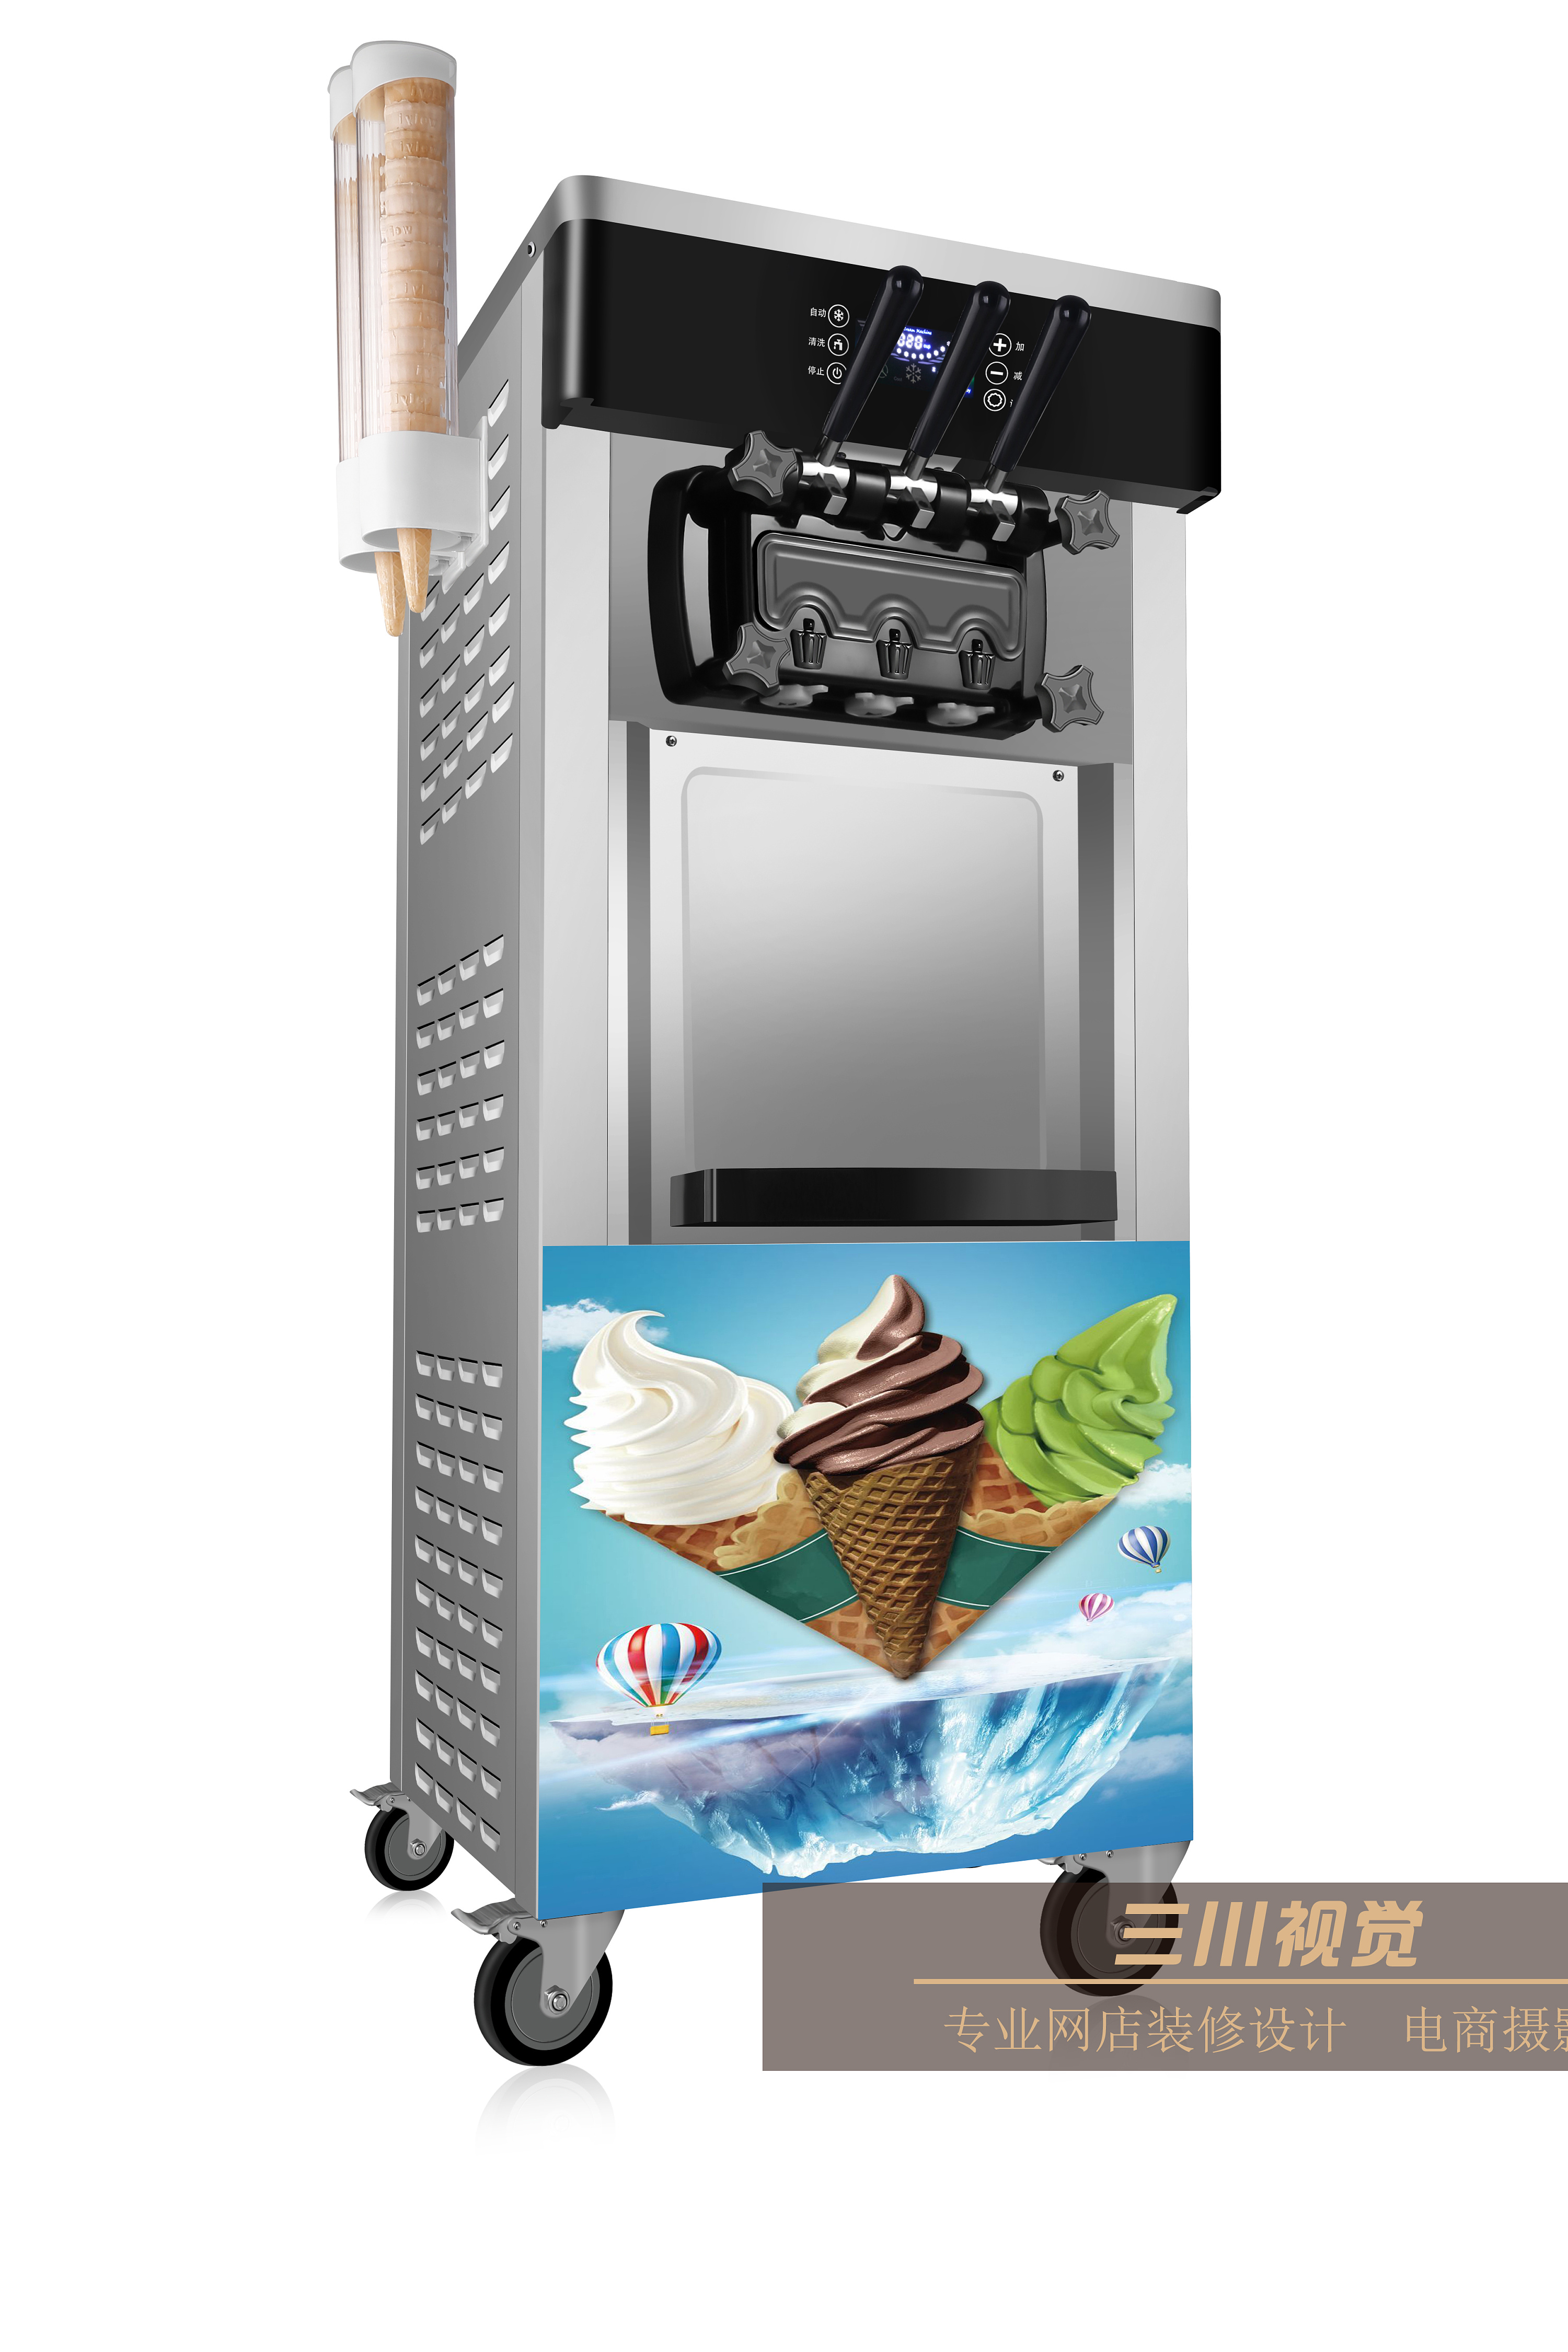 冰淇淋切片生产线 SD5000-南京浦园冰淇淋机械制造有限公司